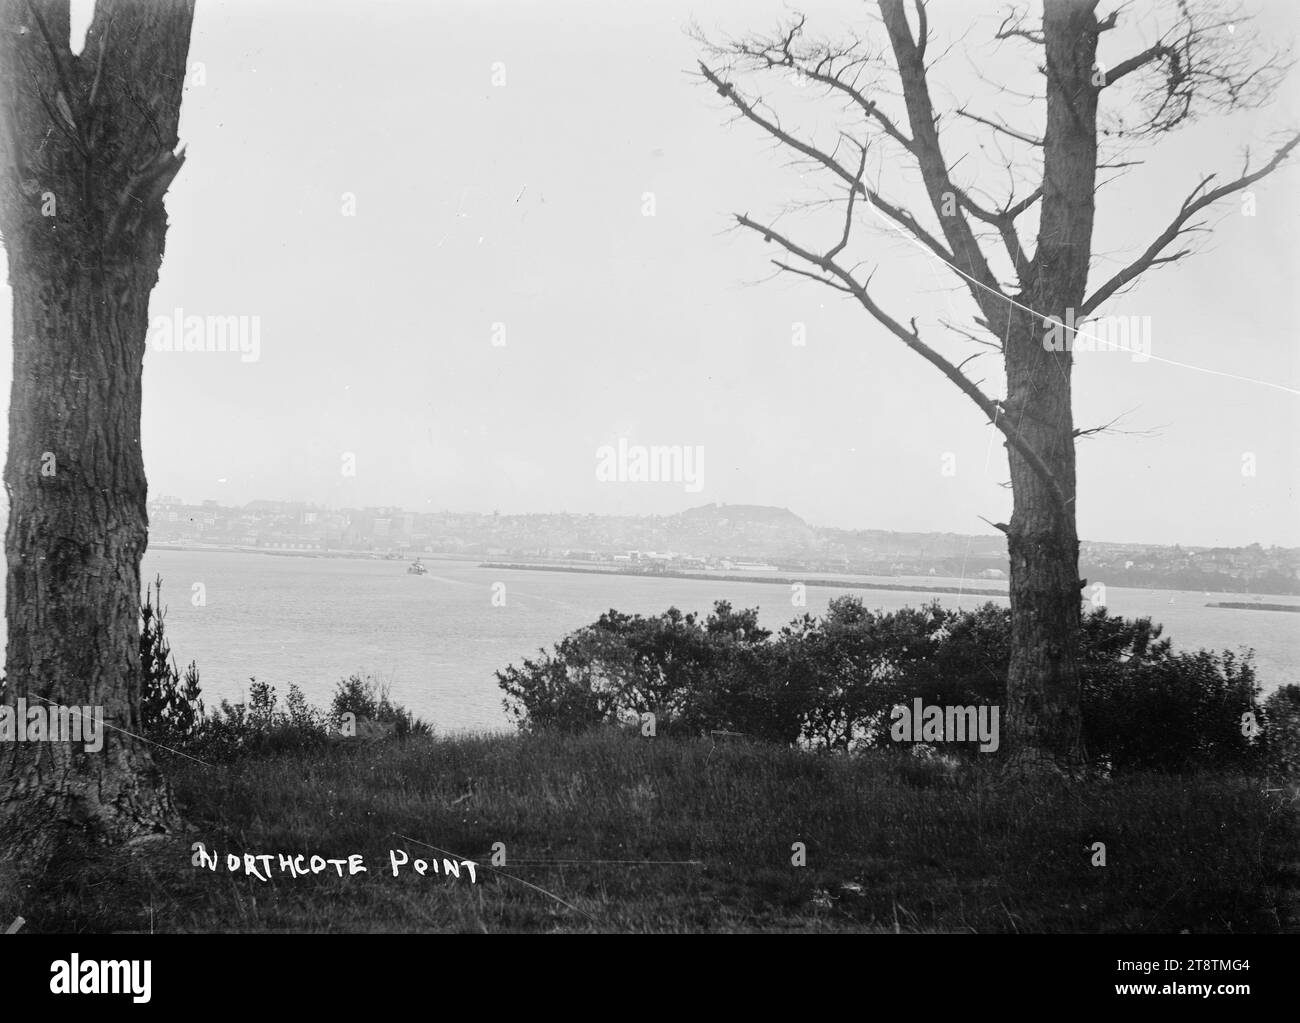 Northcote Point, Northcote, Auckland, nuova Zelanda, Vista da Northcote Point guardando a sud-est verso Auckland, nuova Zelanda in lontananza. Un traghetto può essere visto avvicinarsi ad Auckland, nuova Zelanda. Gli alberi sono in primo piano Foto Stock